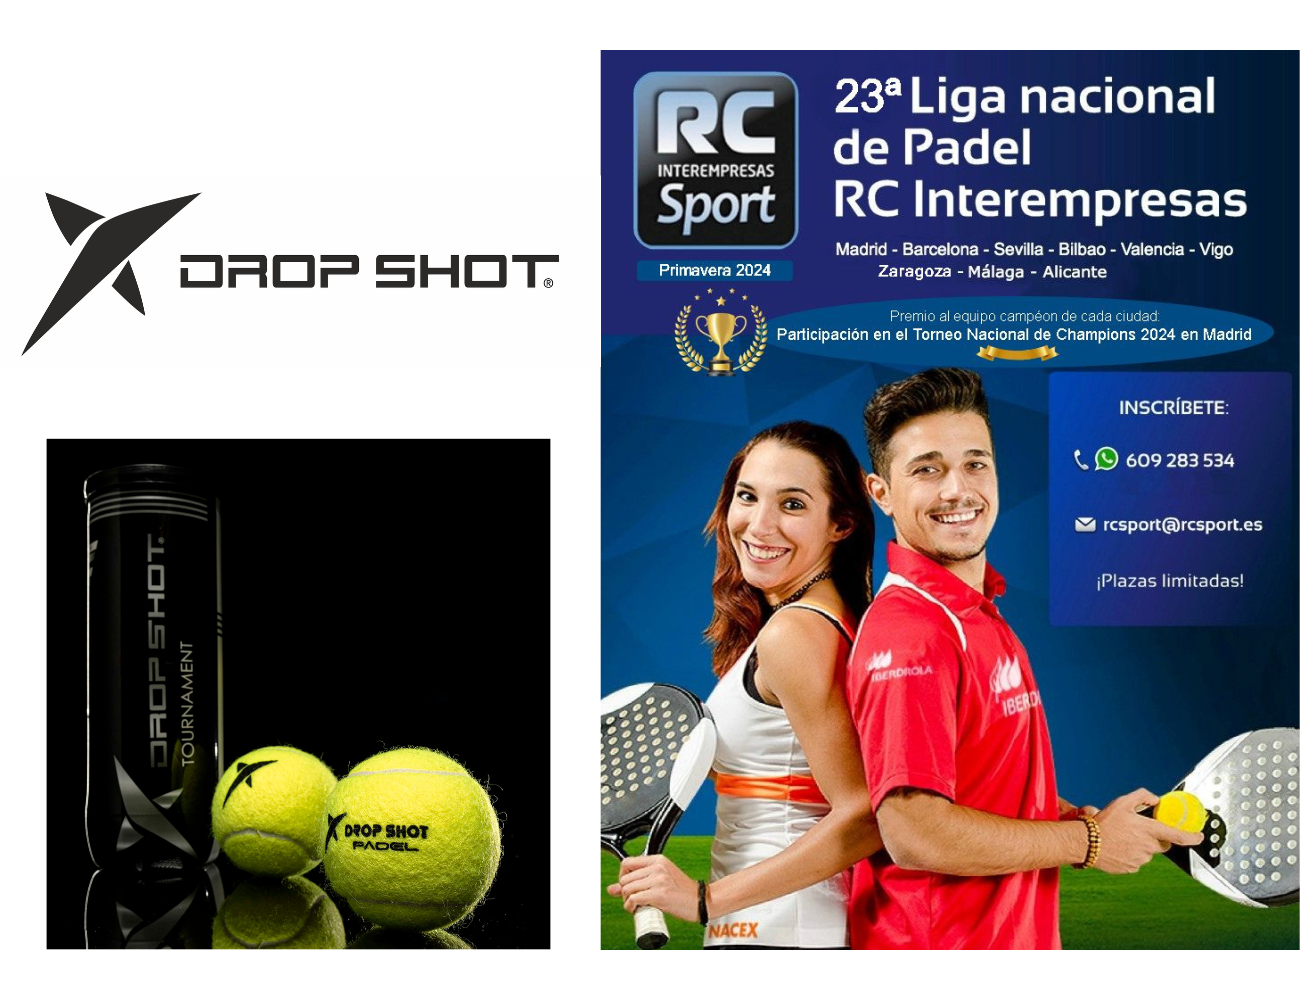 Dropshot, marca deportiva oficial de la Liga Nacional de Padel RC Interempresas 